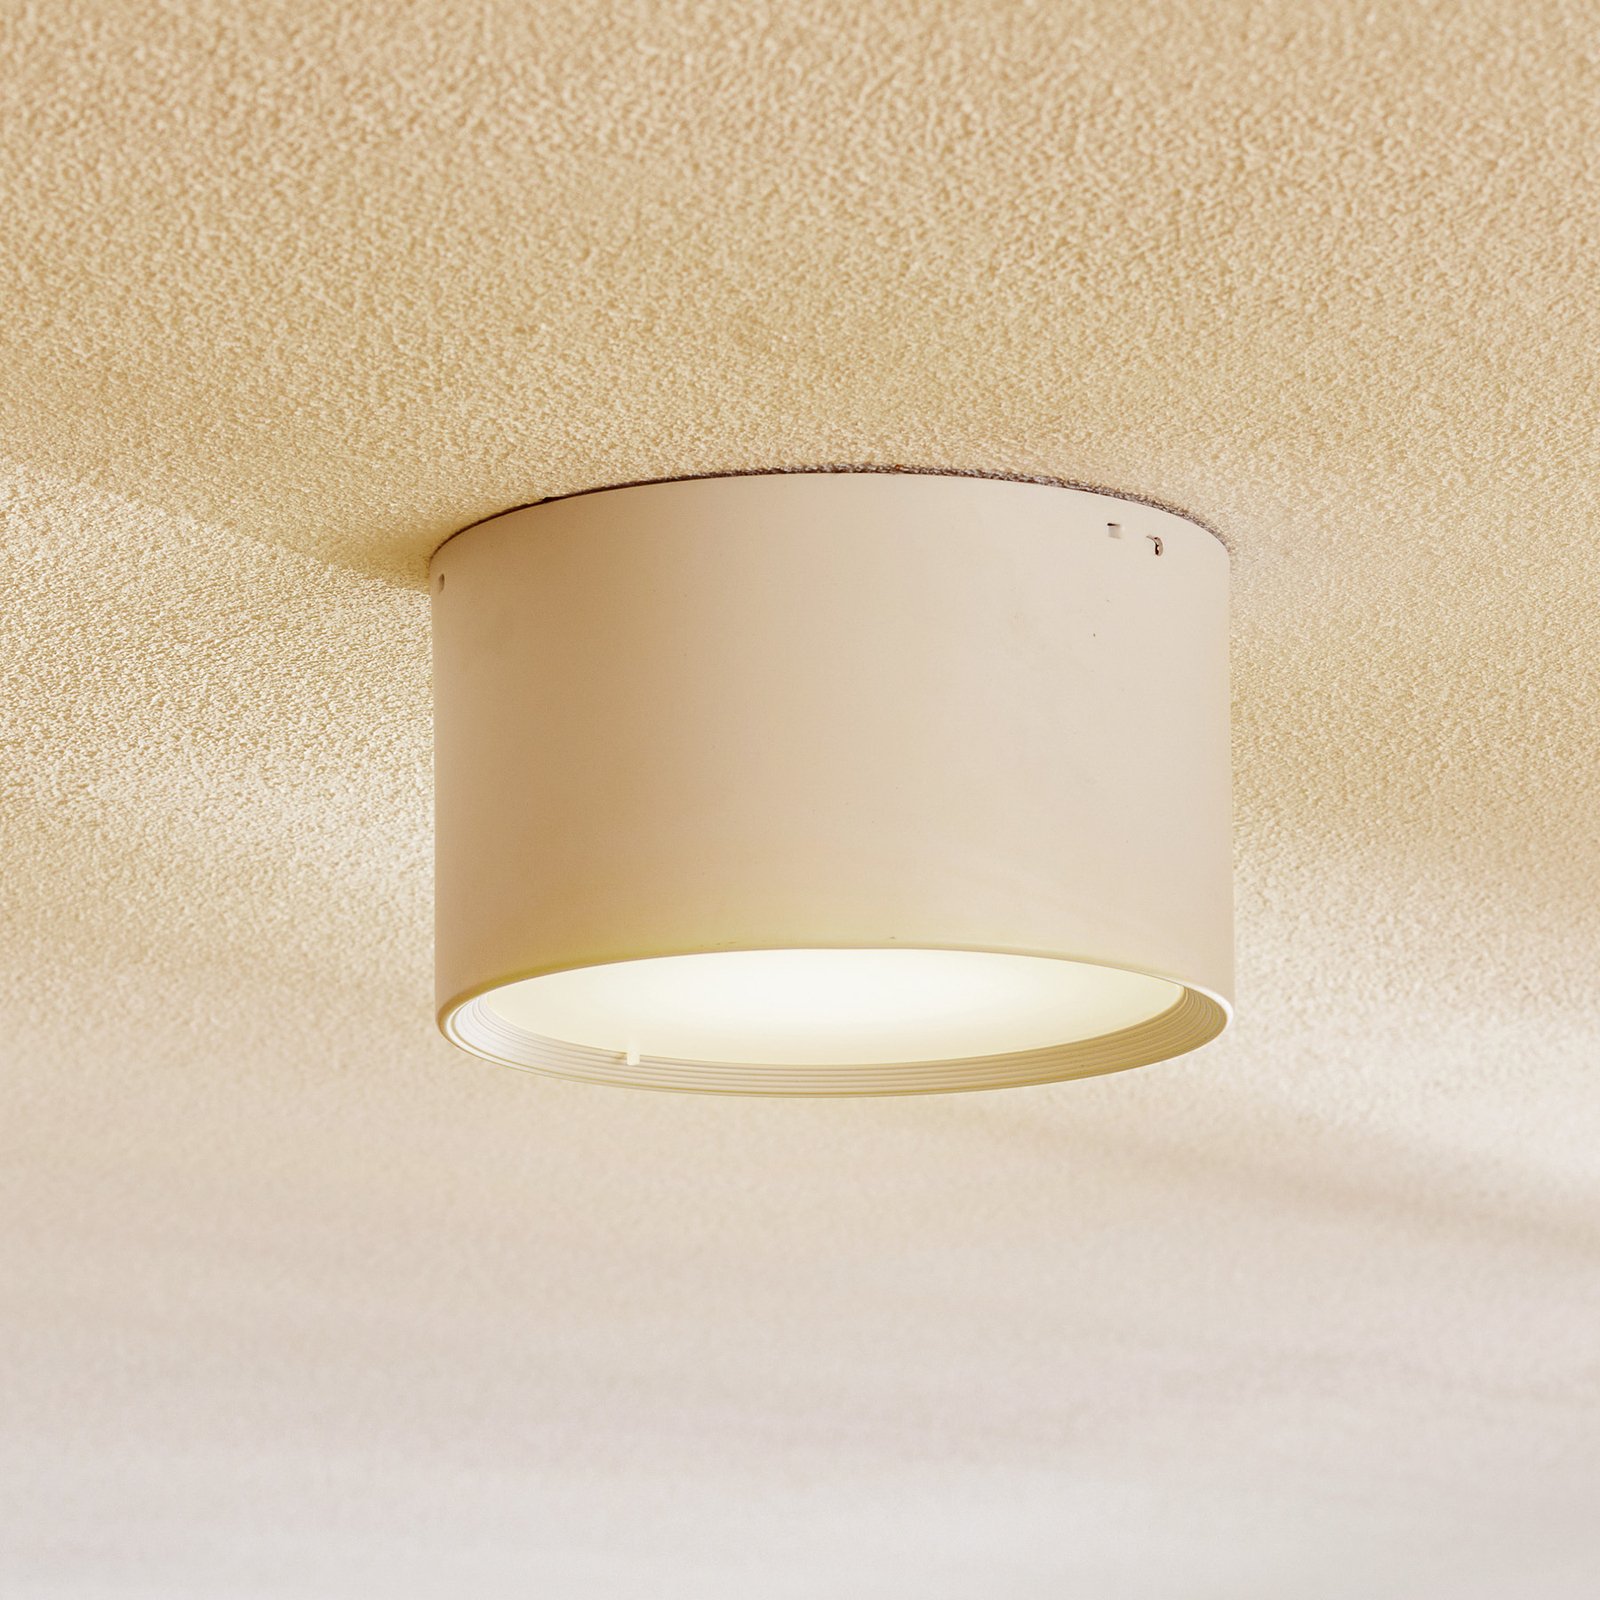 Faretto Ita LED bianco con diffusore, Ø 15 cm